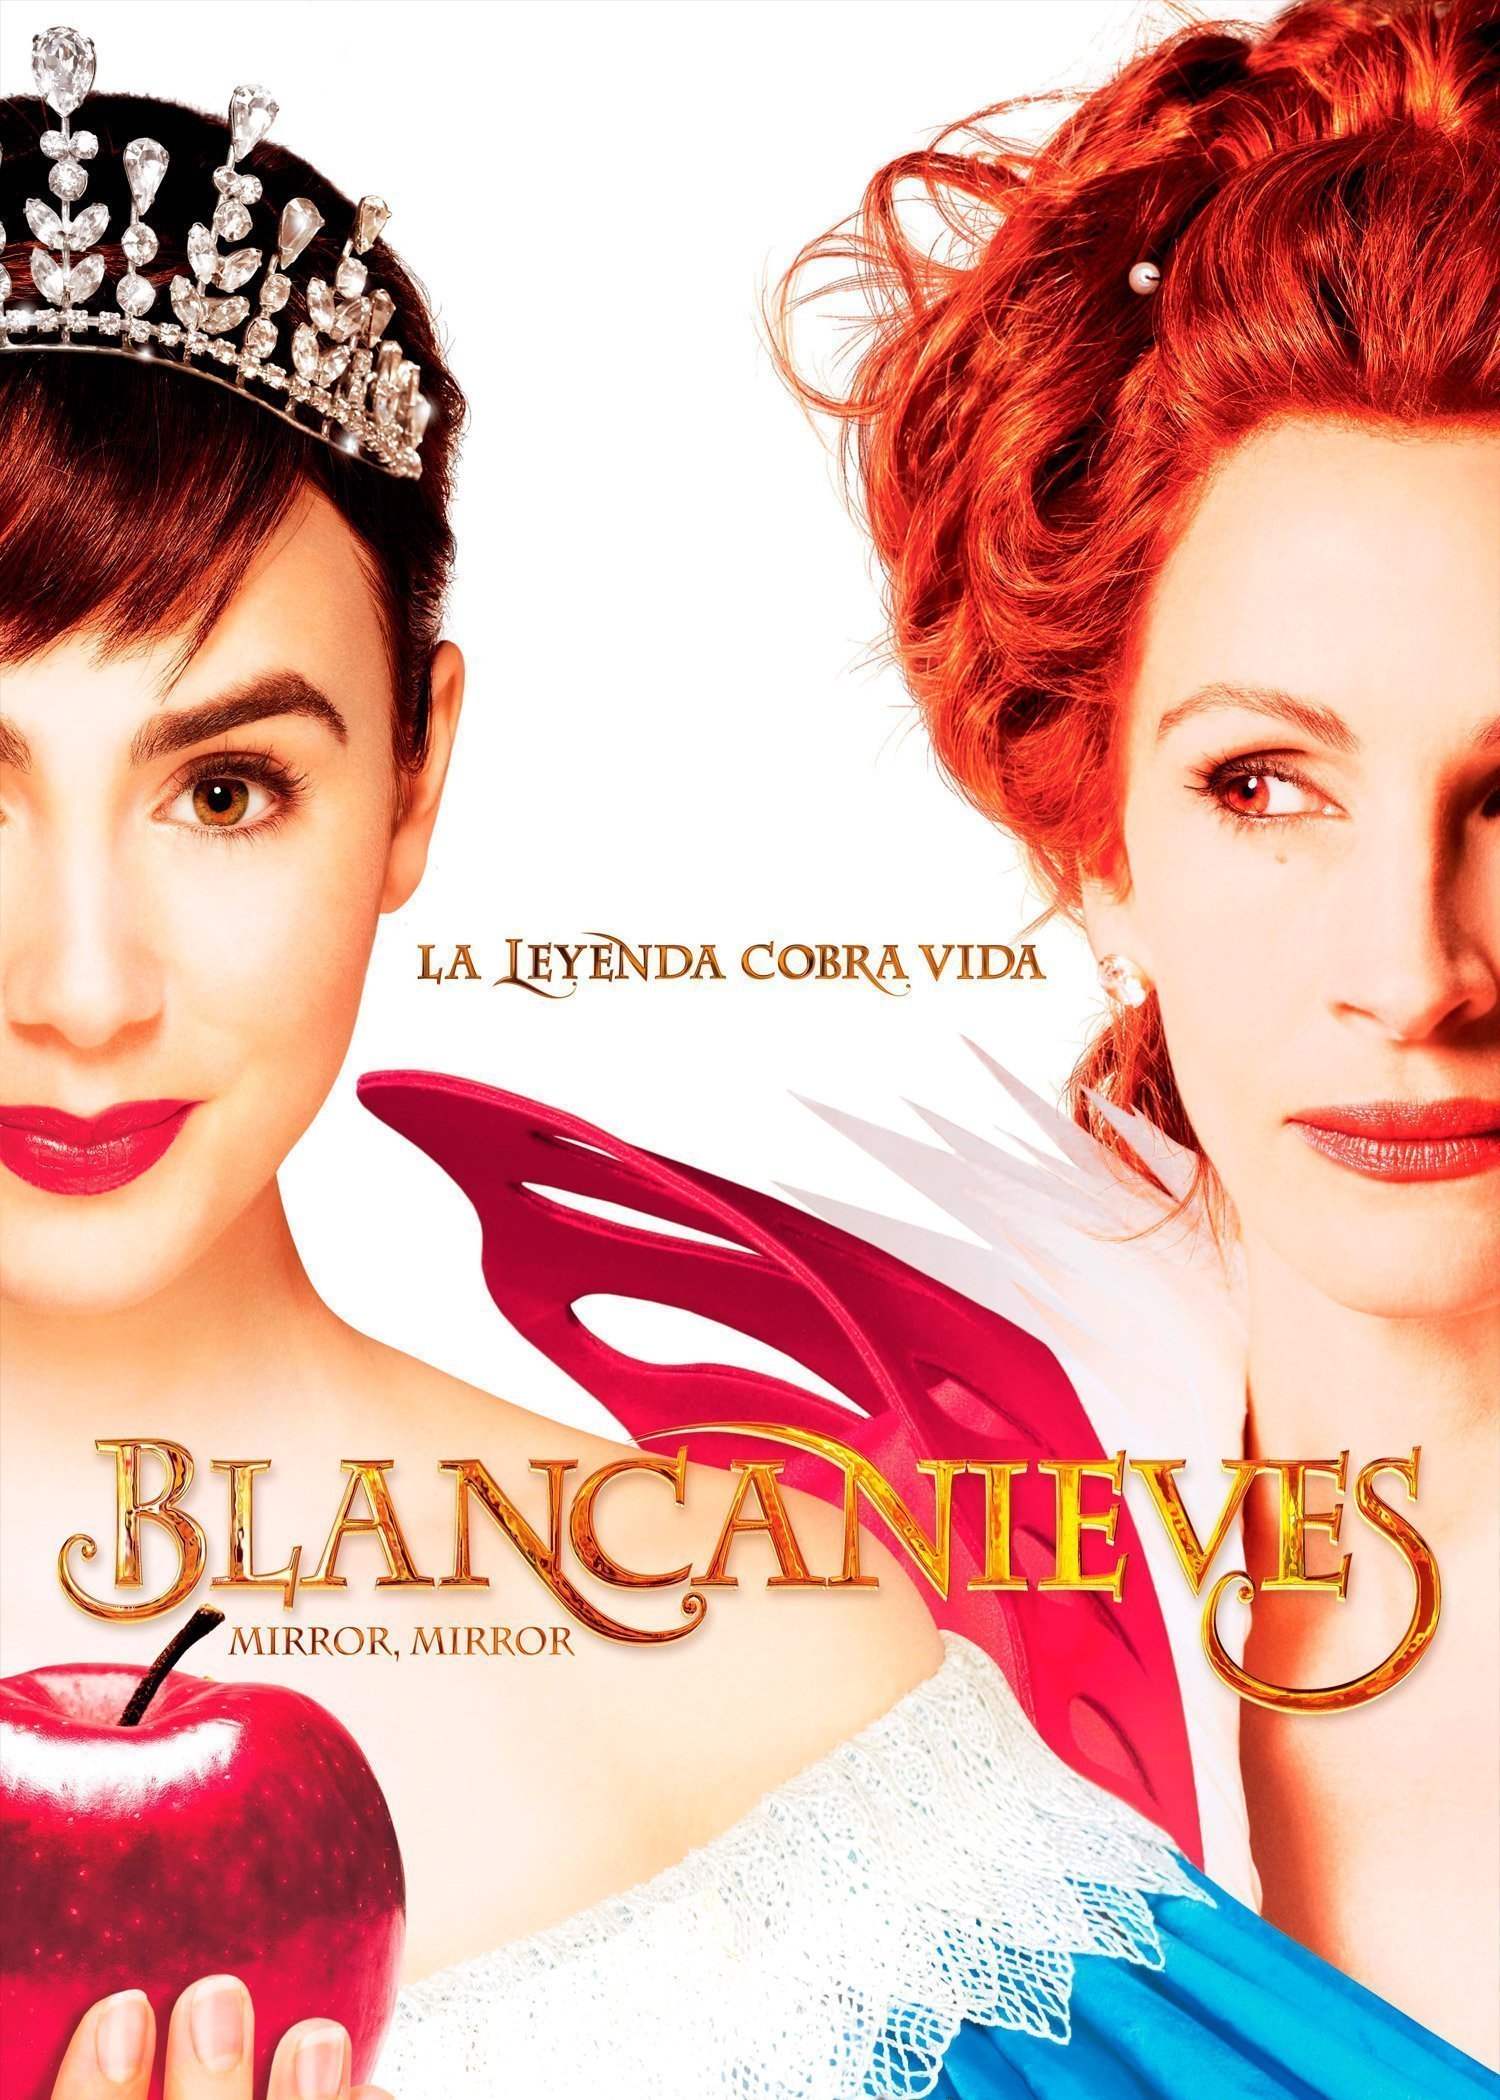 Blancanieves (Mirror, Mirror)